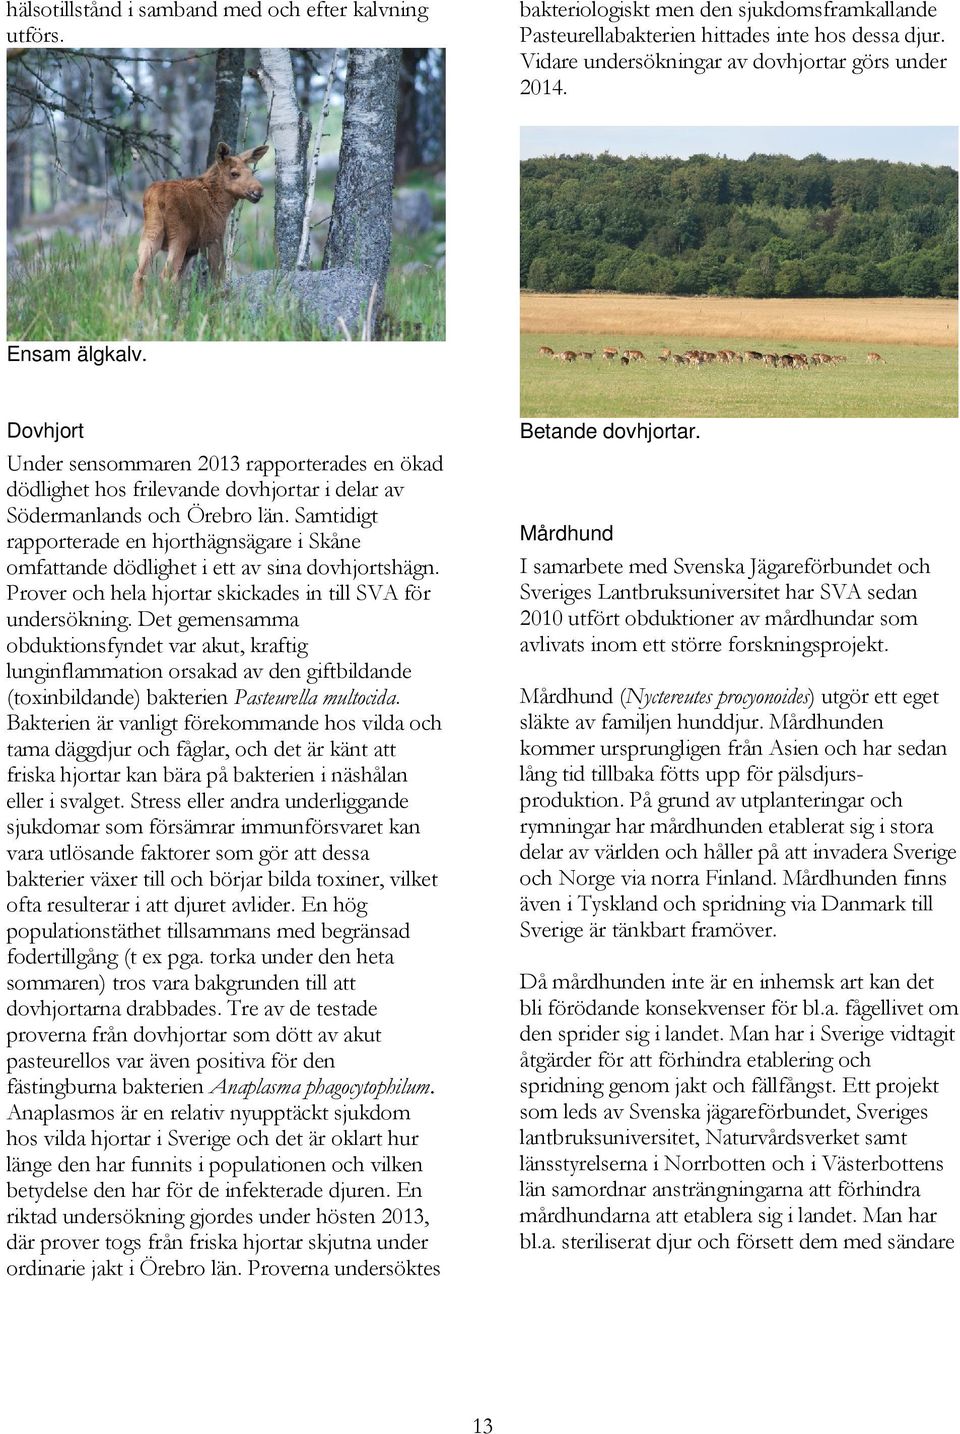 Samtidigt rapporterade en hjorthägnsägare i Skåne omfattande dödlighet i ett av sina dovhjortshägn. Prover och hela hjortar skickades in till SVA för undersökning.